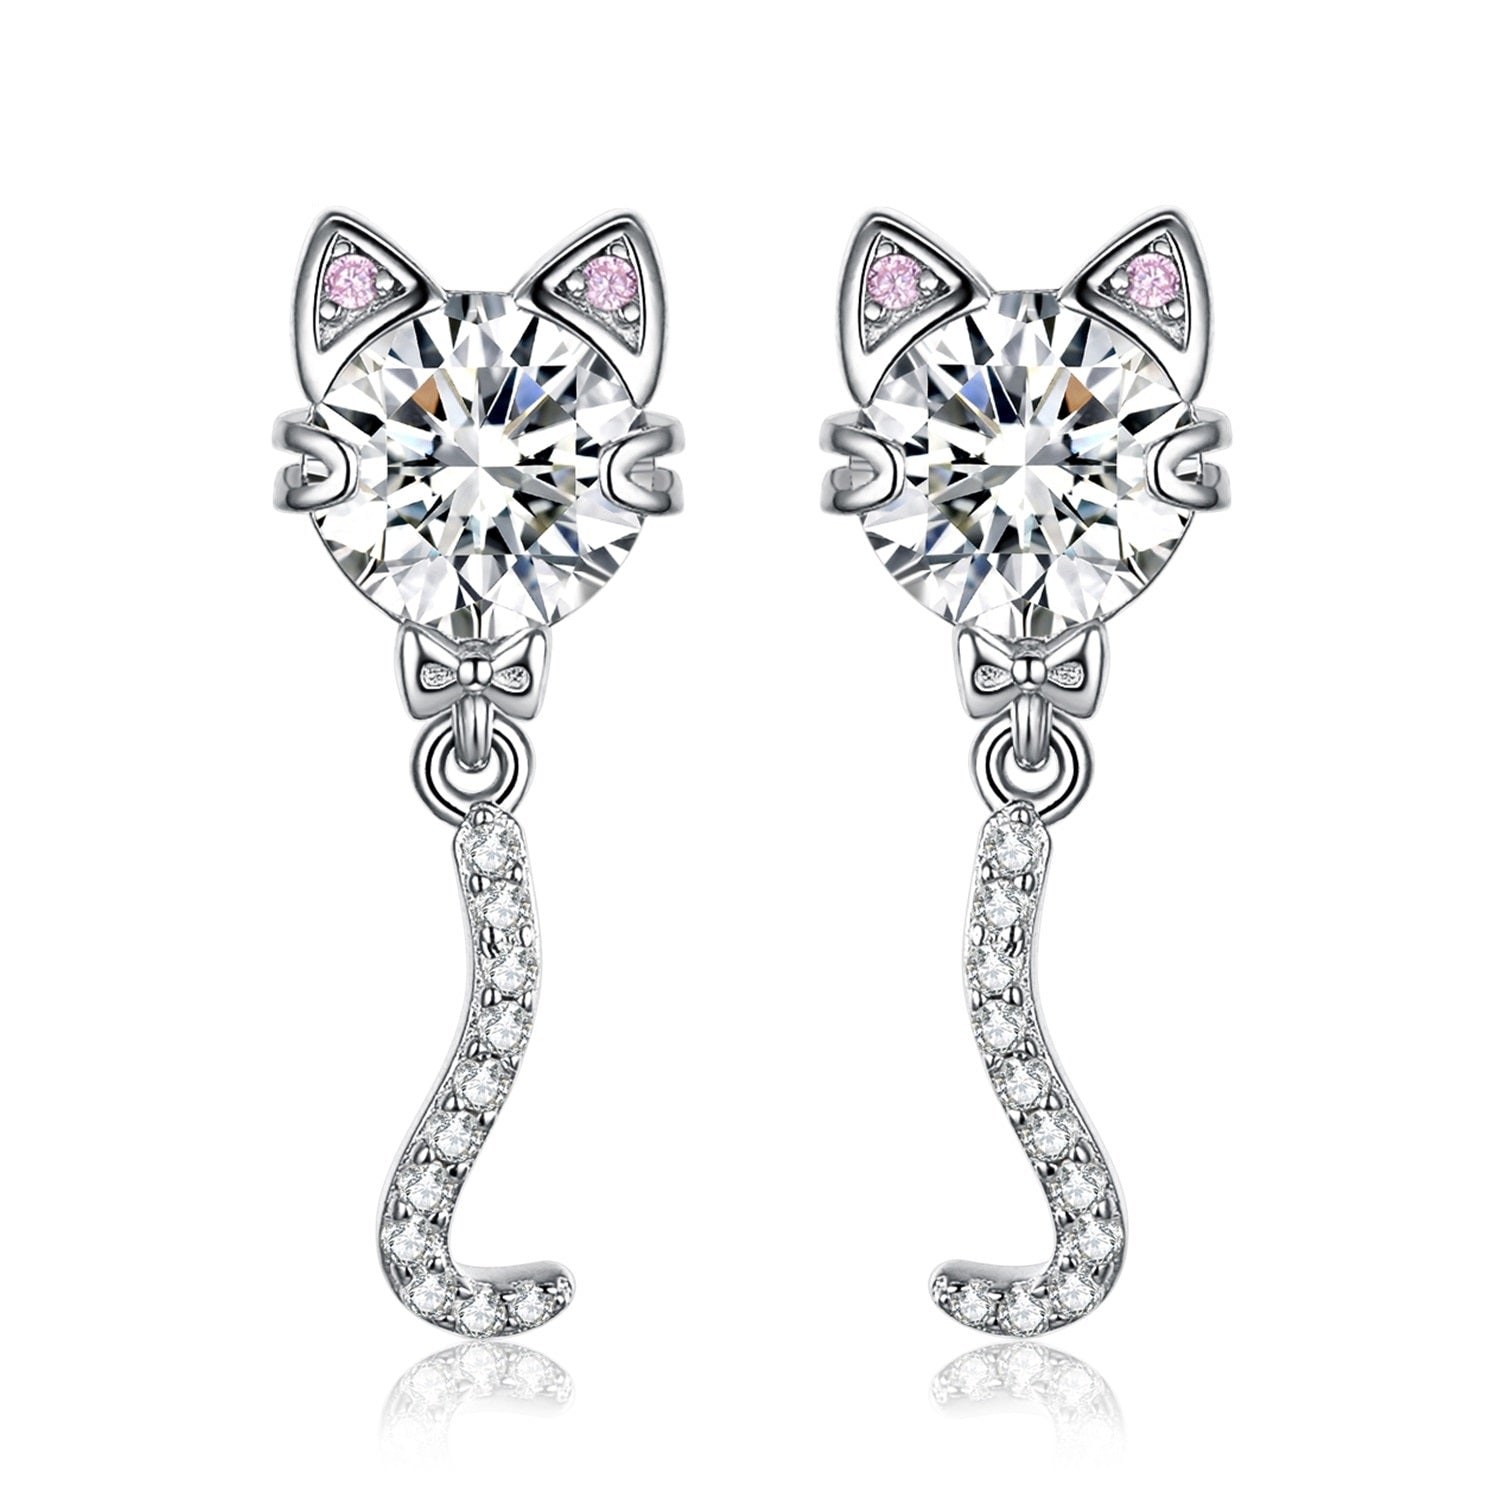 Dangle Cat Earrings - Cat earrings